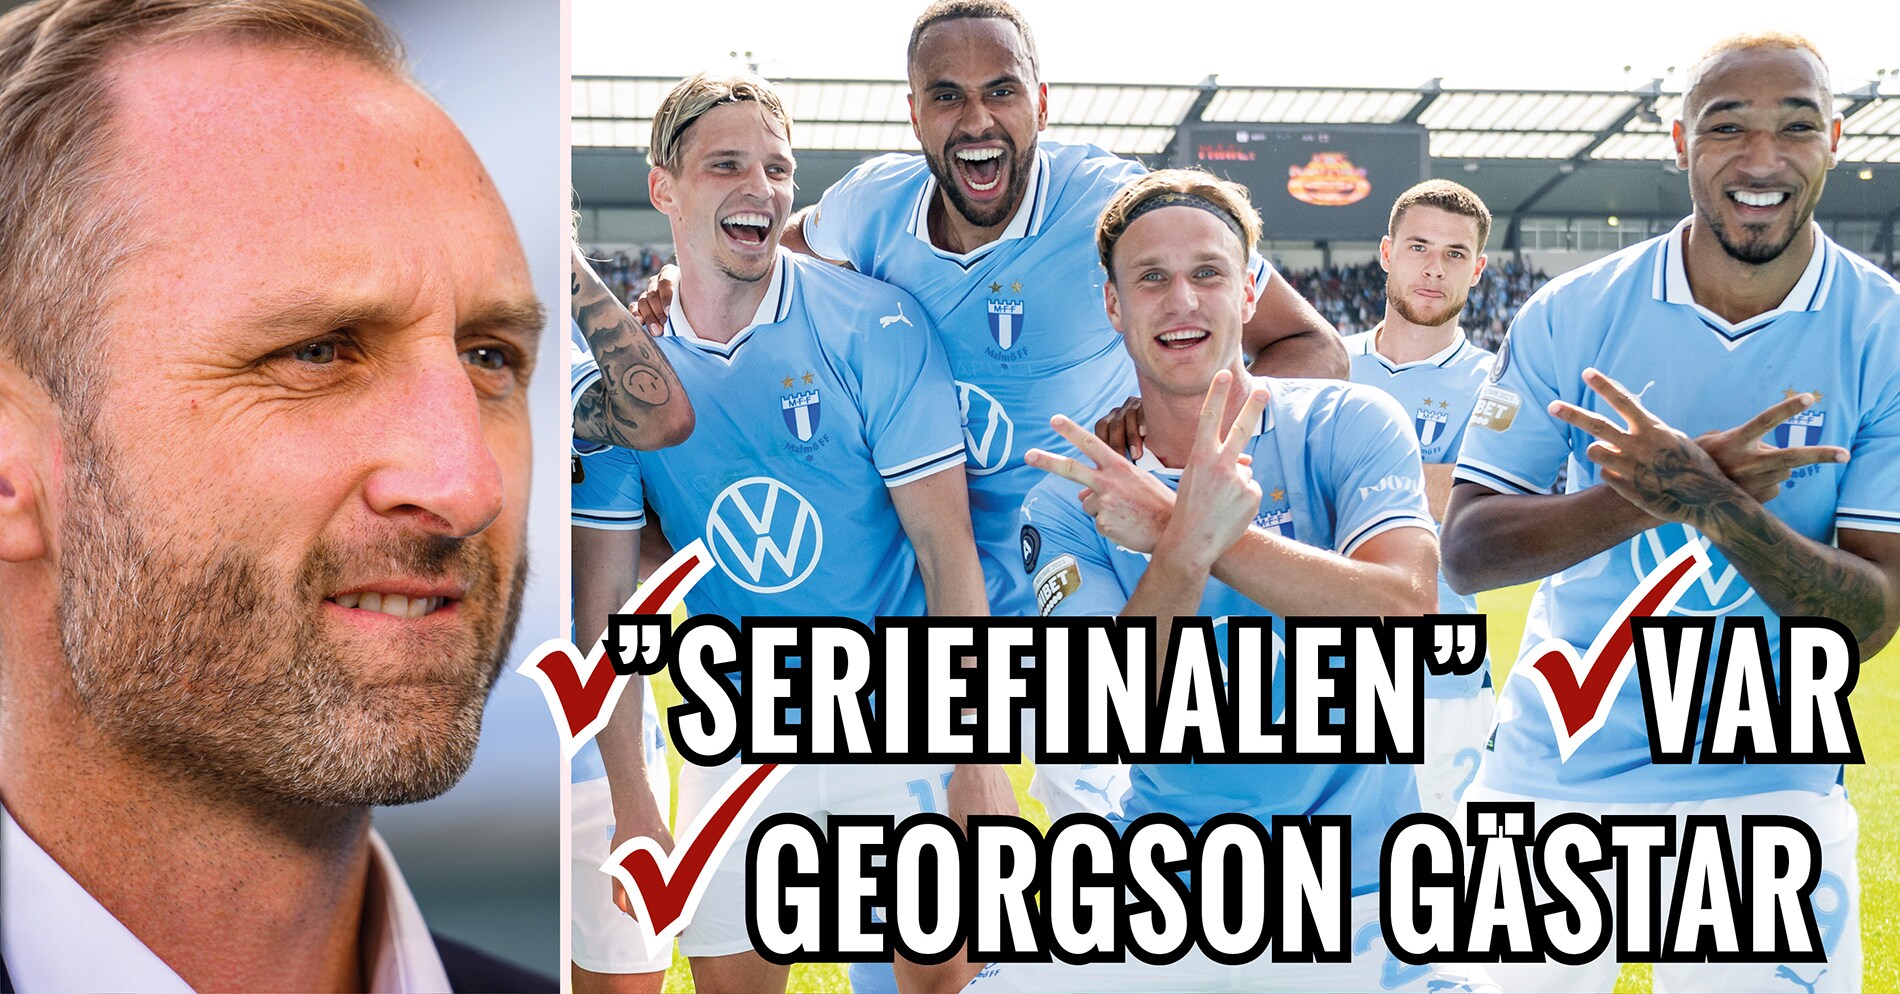 Andreas Georgson gästar Sportbladet Allsvenskan live